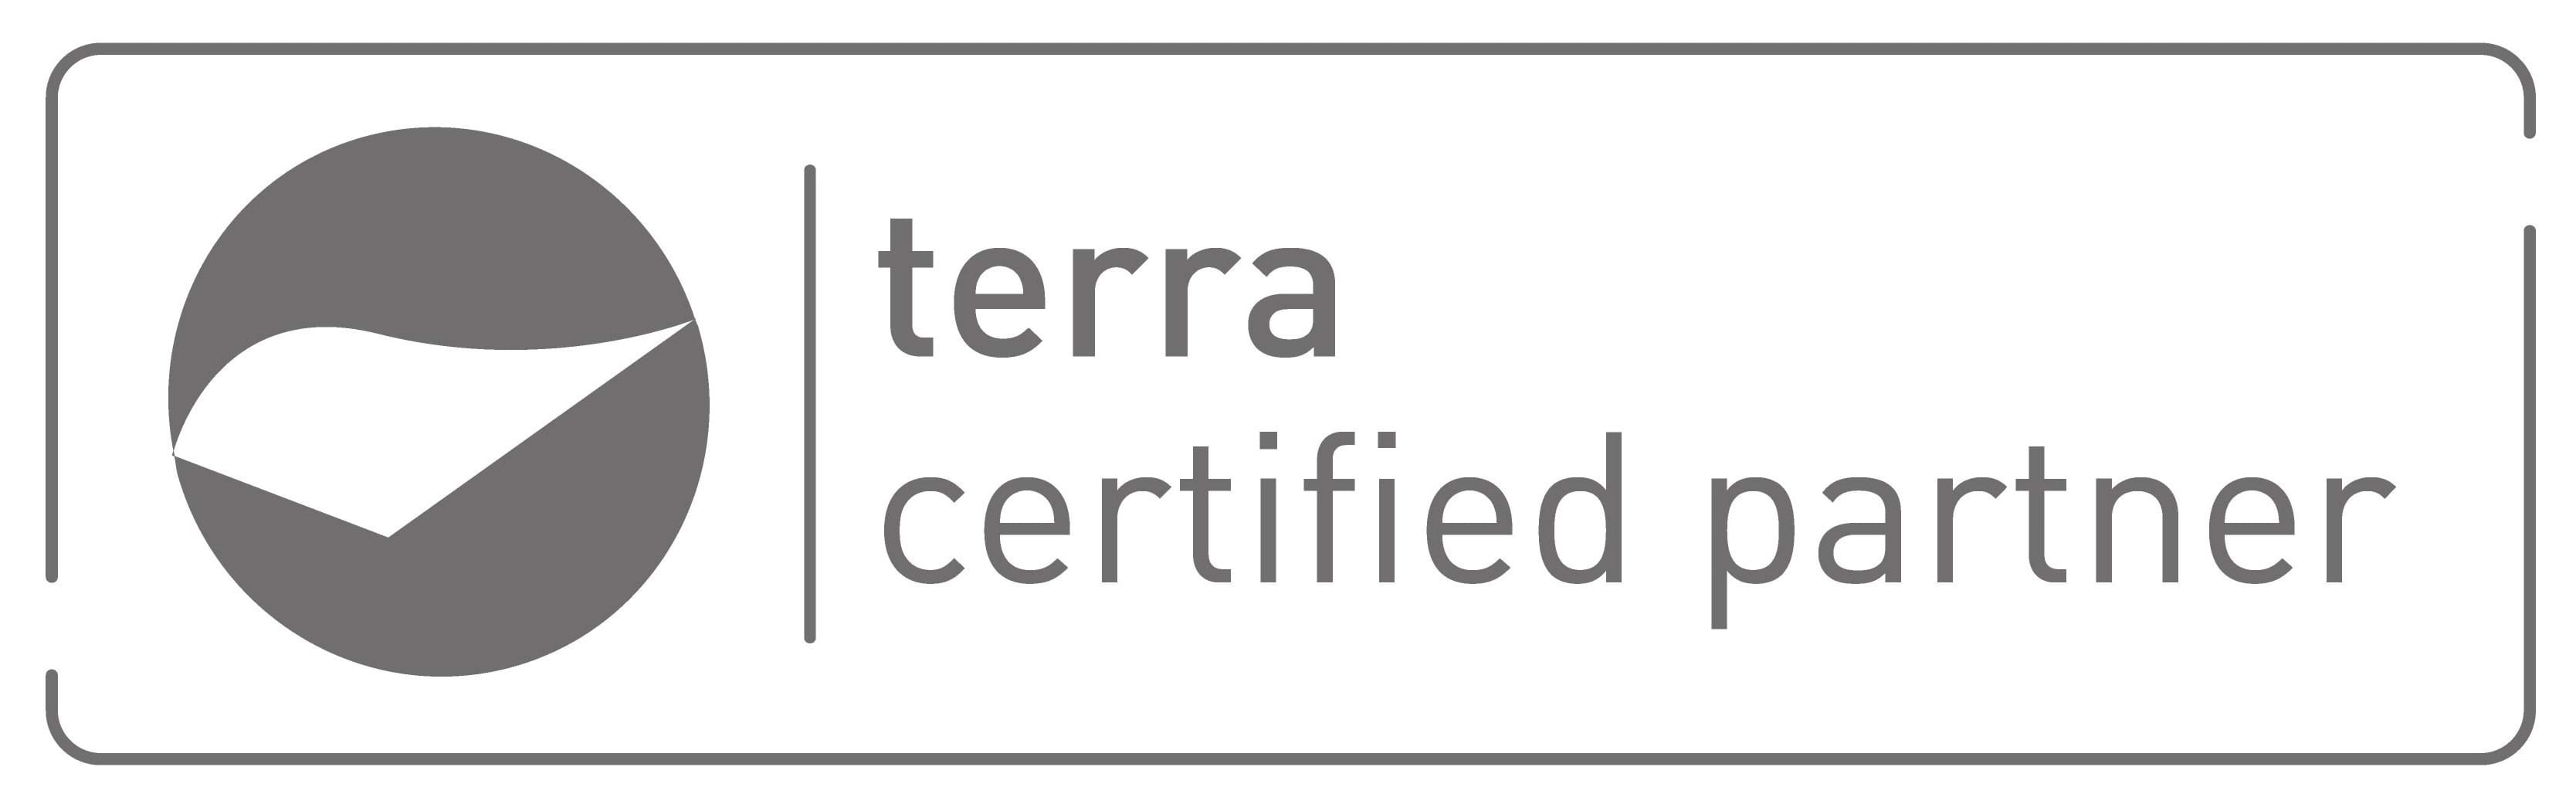 Terra_Certified_Partner_Meran